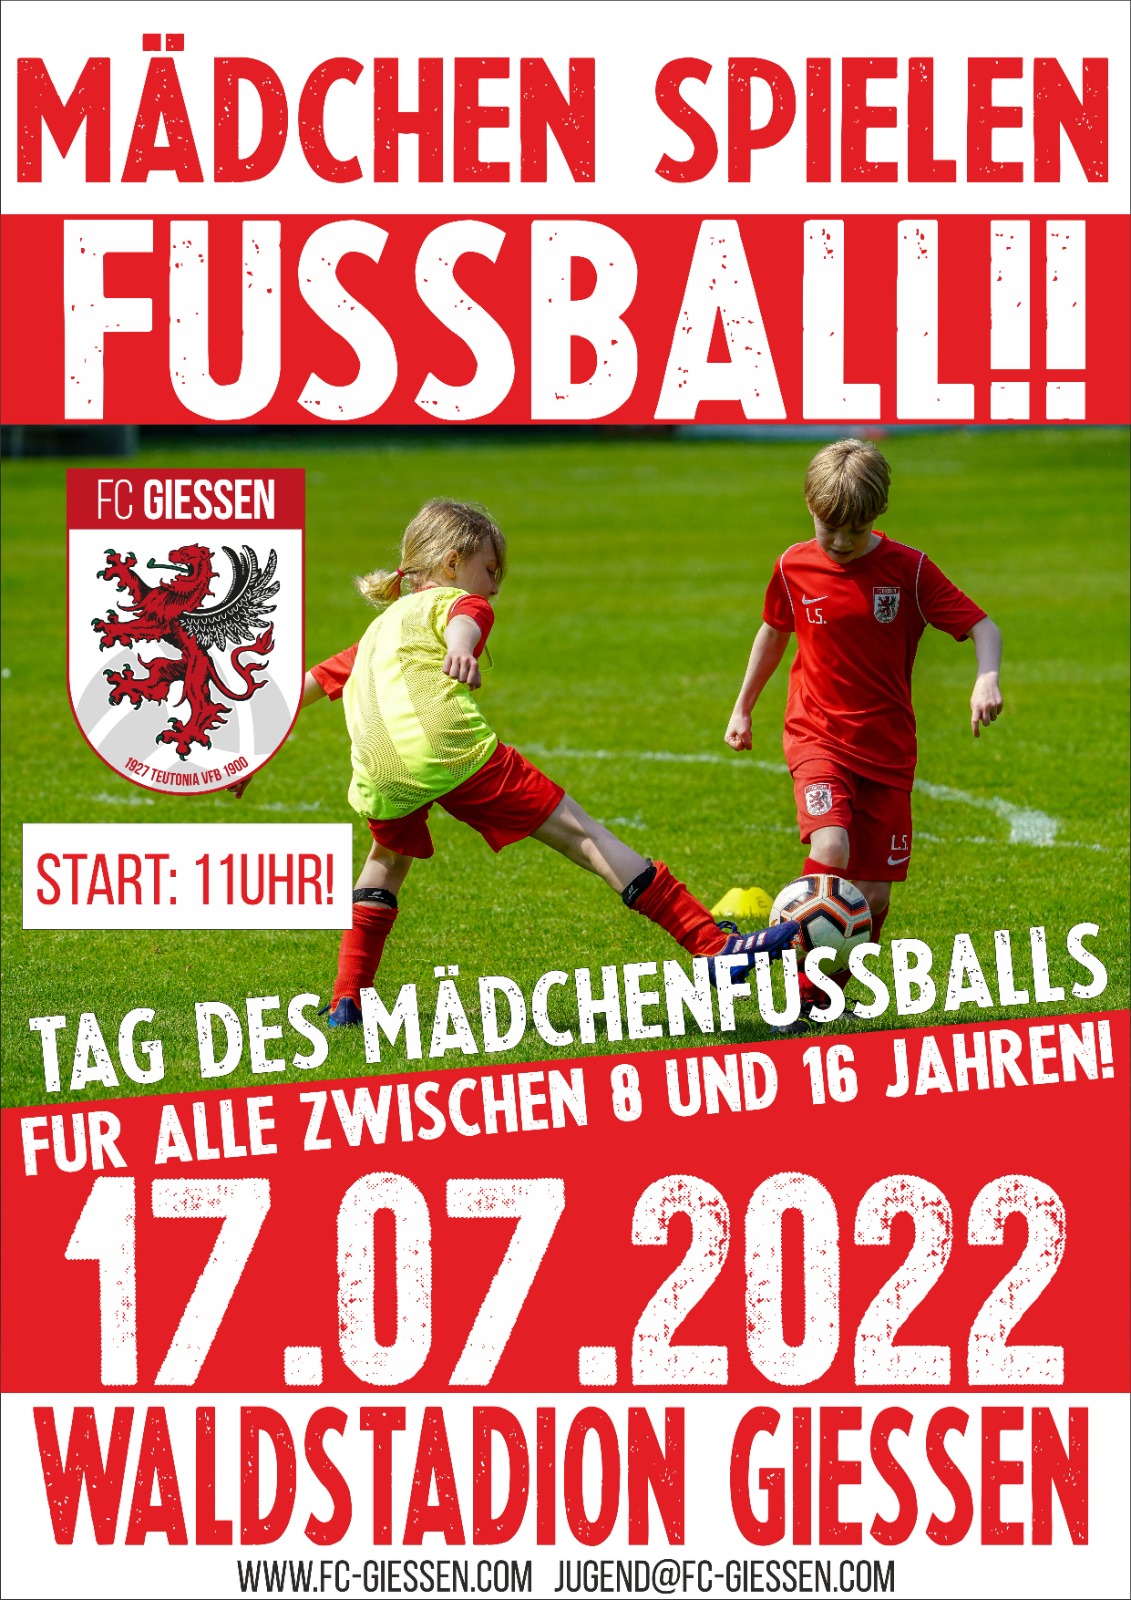 Tag des Mädchenfussballs beim FC Giessen am 17.07.2022